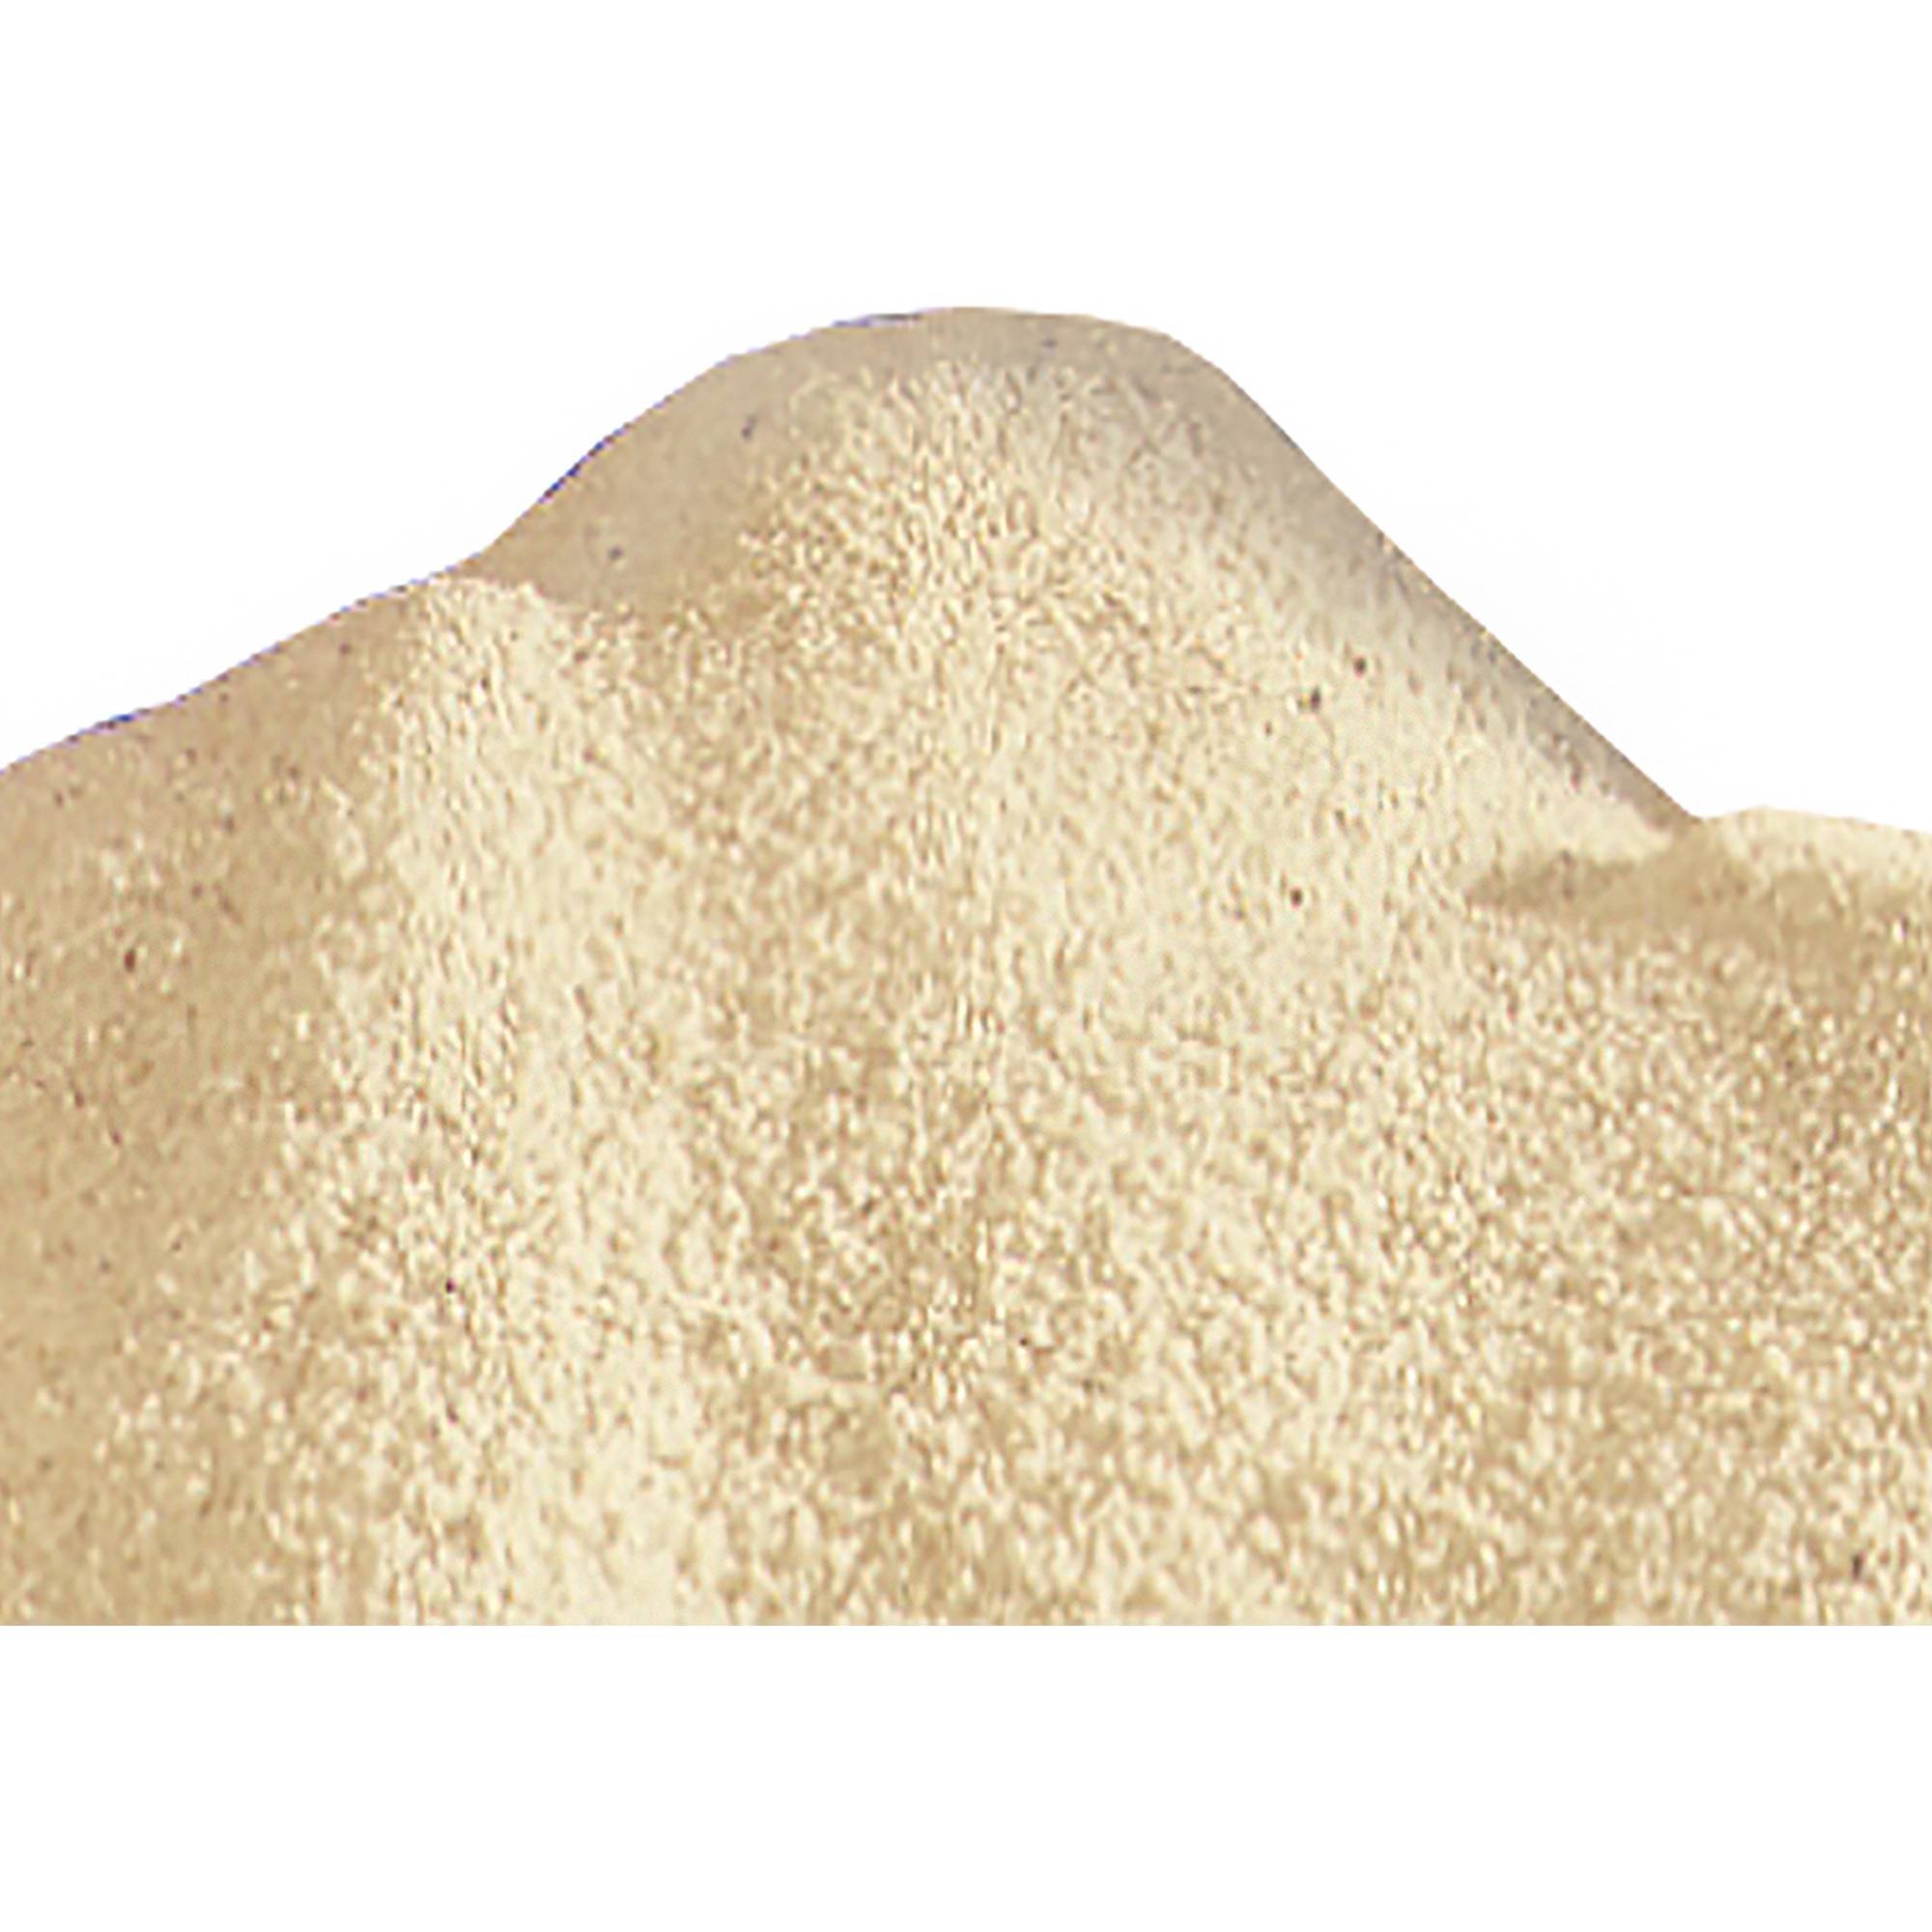 Spezial Filtersand für Sandfilteranlagen 0,4 bis 0,8 mm - 10 kg